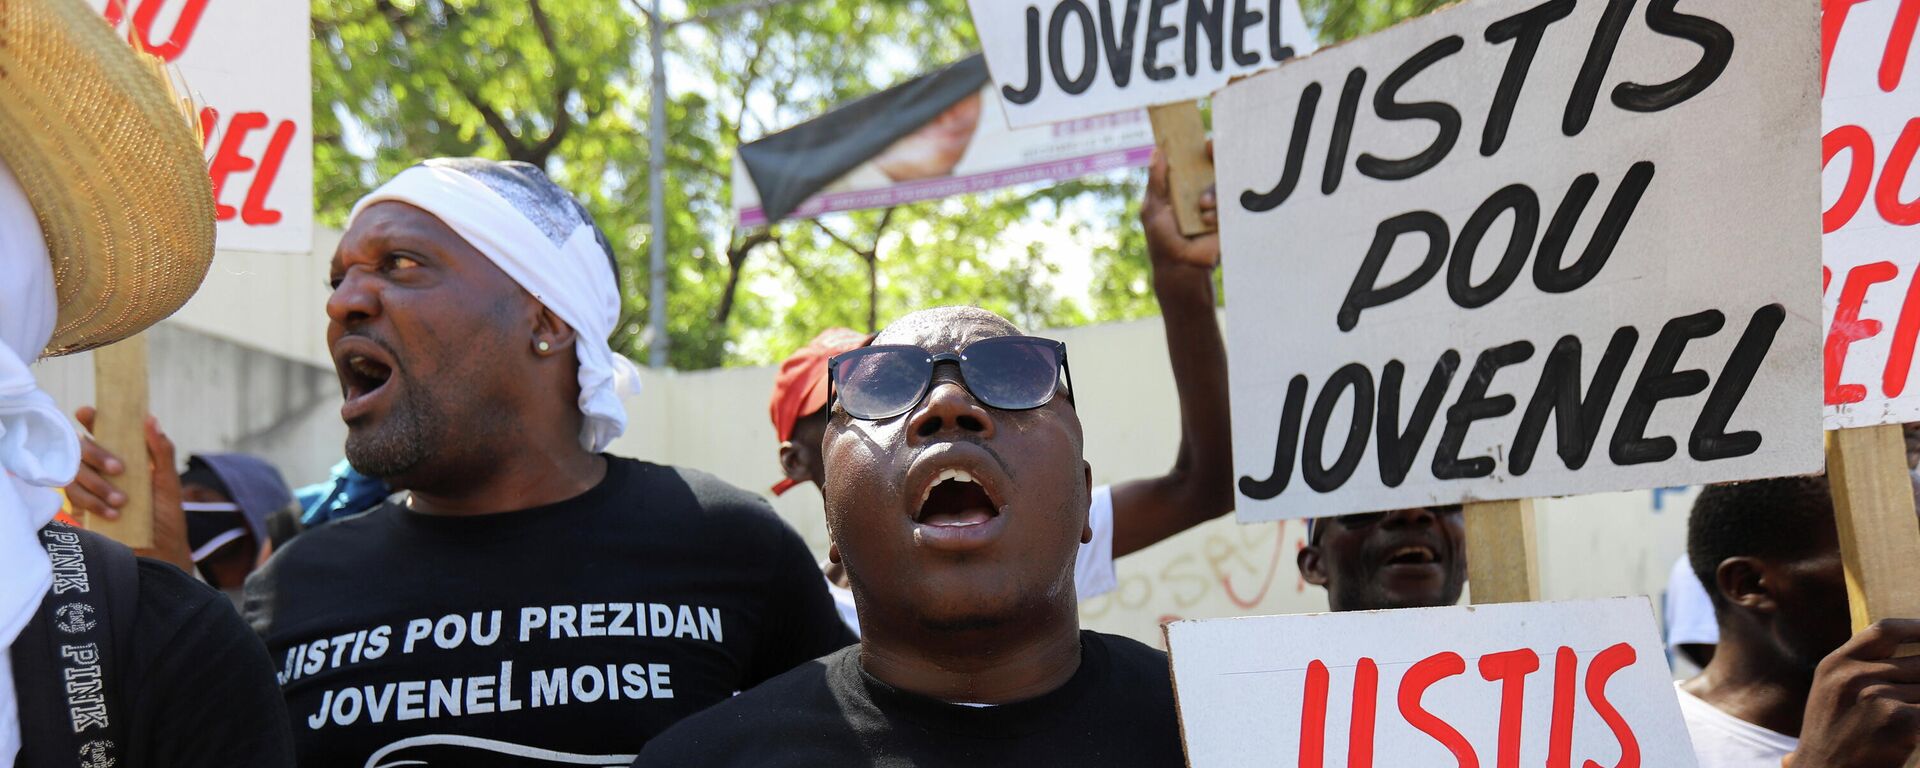 ABD destekli darbeyle öldürülen Haiti Devlet Başkanı Jovenel Moise suikastıyla ilgili davanın görüldüğü başkent Port-au-Prince'deki mahkeme önünde 'Jovenel için adalet' pankartları açan göstericiler  - Sputnik Türkiye, 1920, 17.10.2021